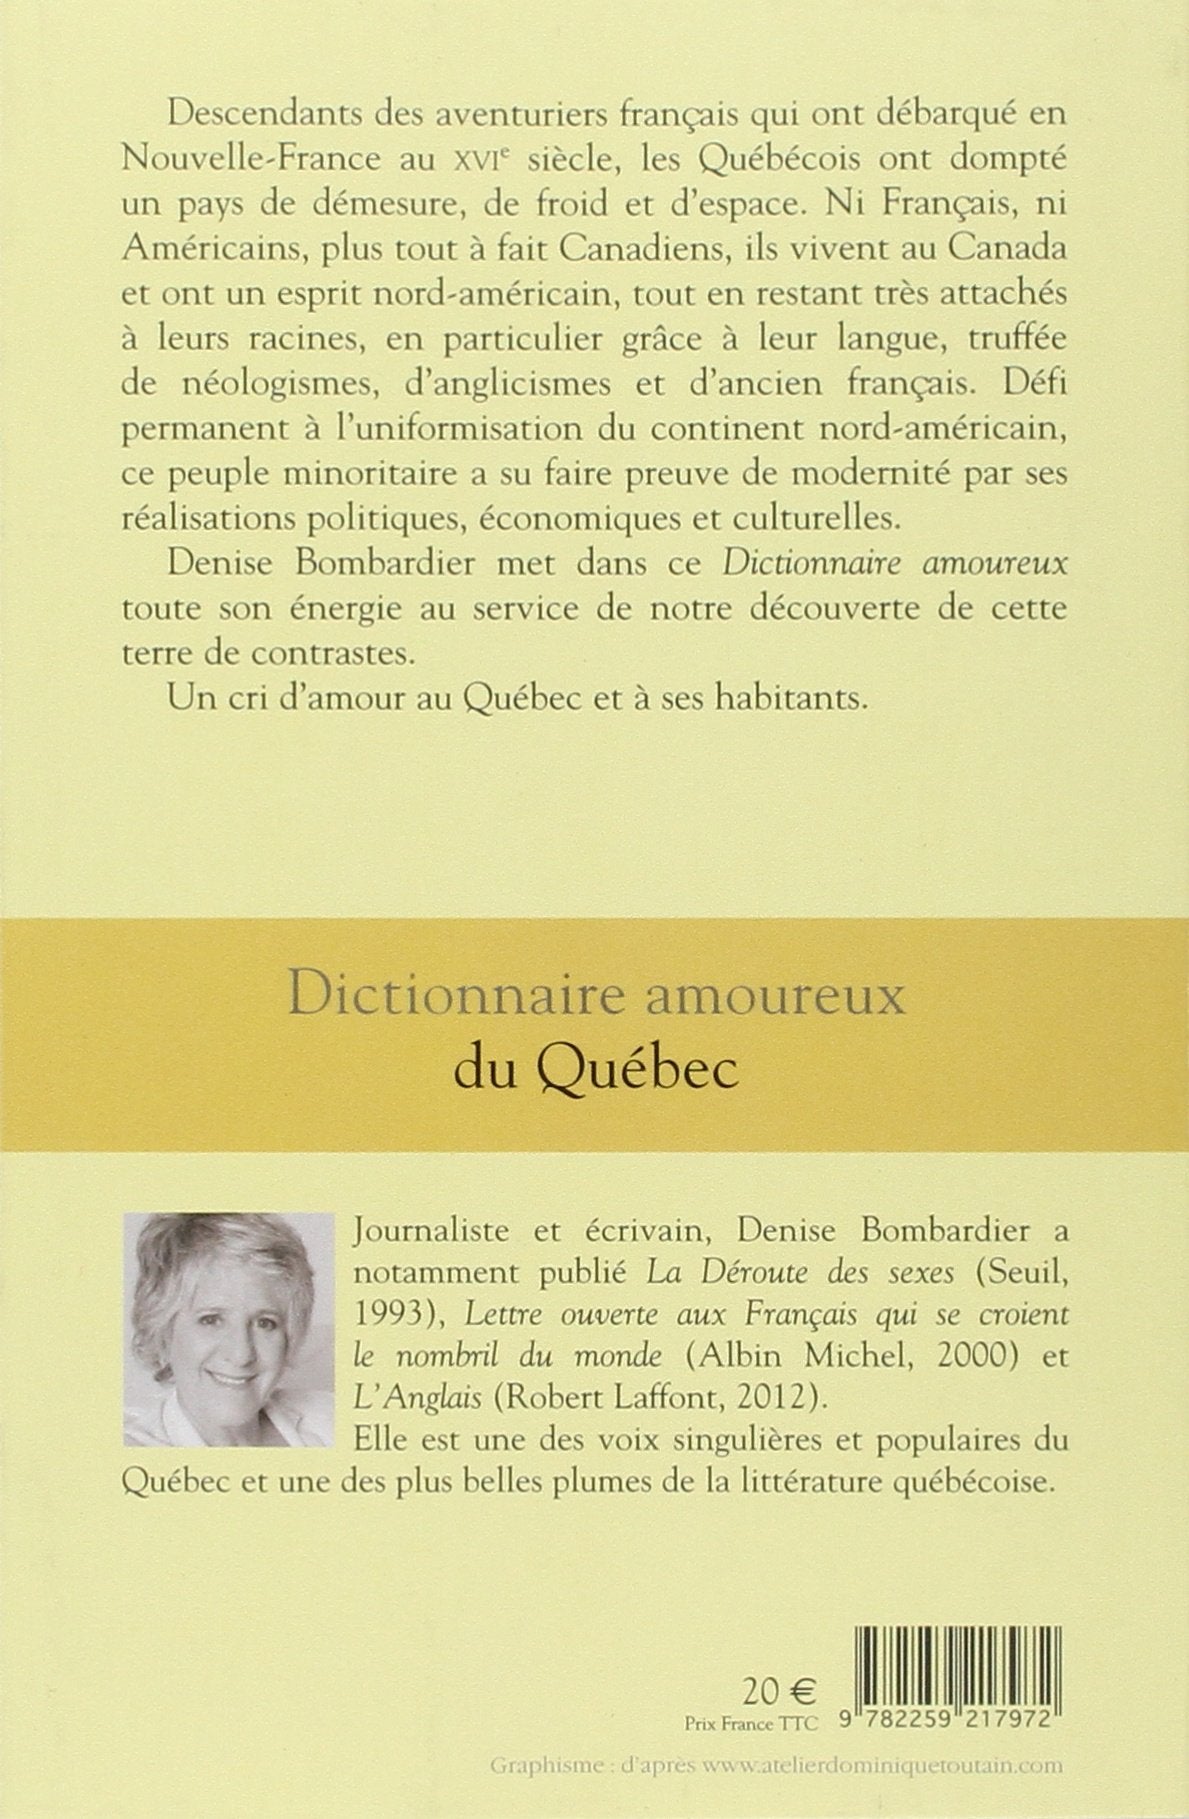 Dictionnaire amoureux du Québec (Denise Bombardier)